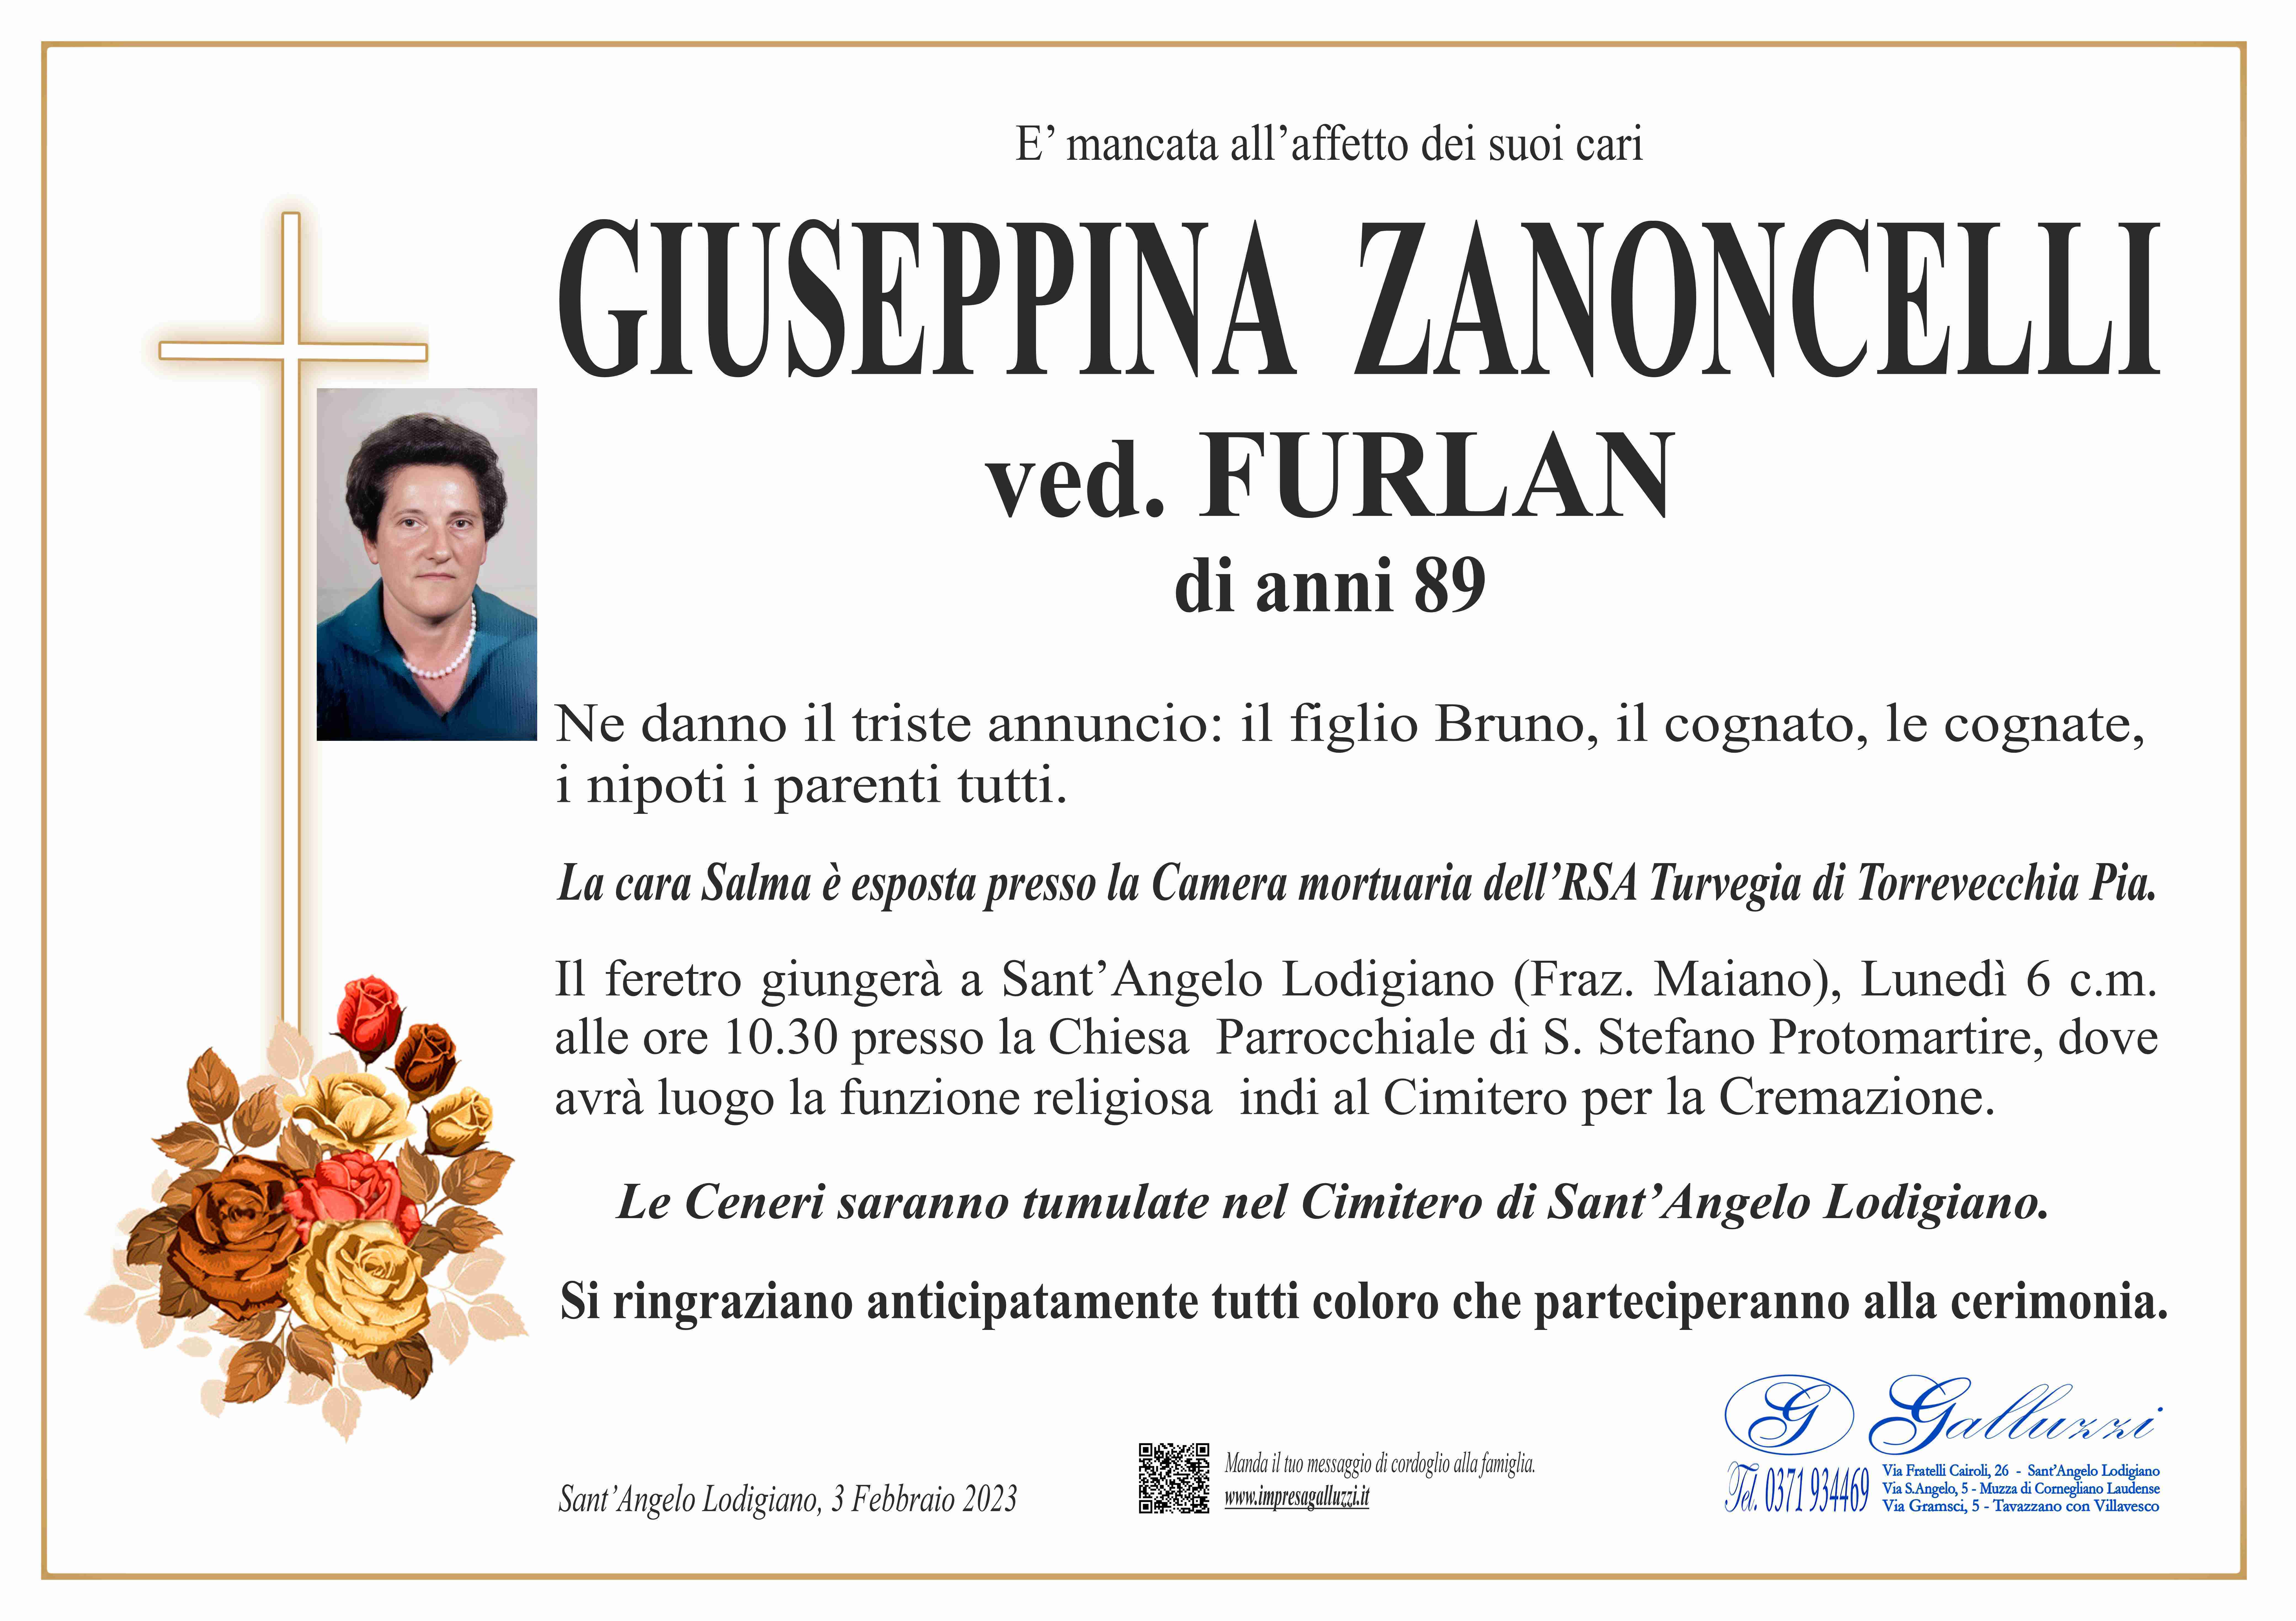 Giuseppina Zanoncelli